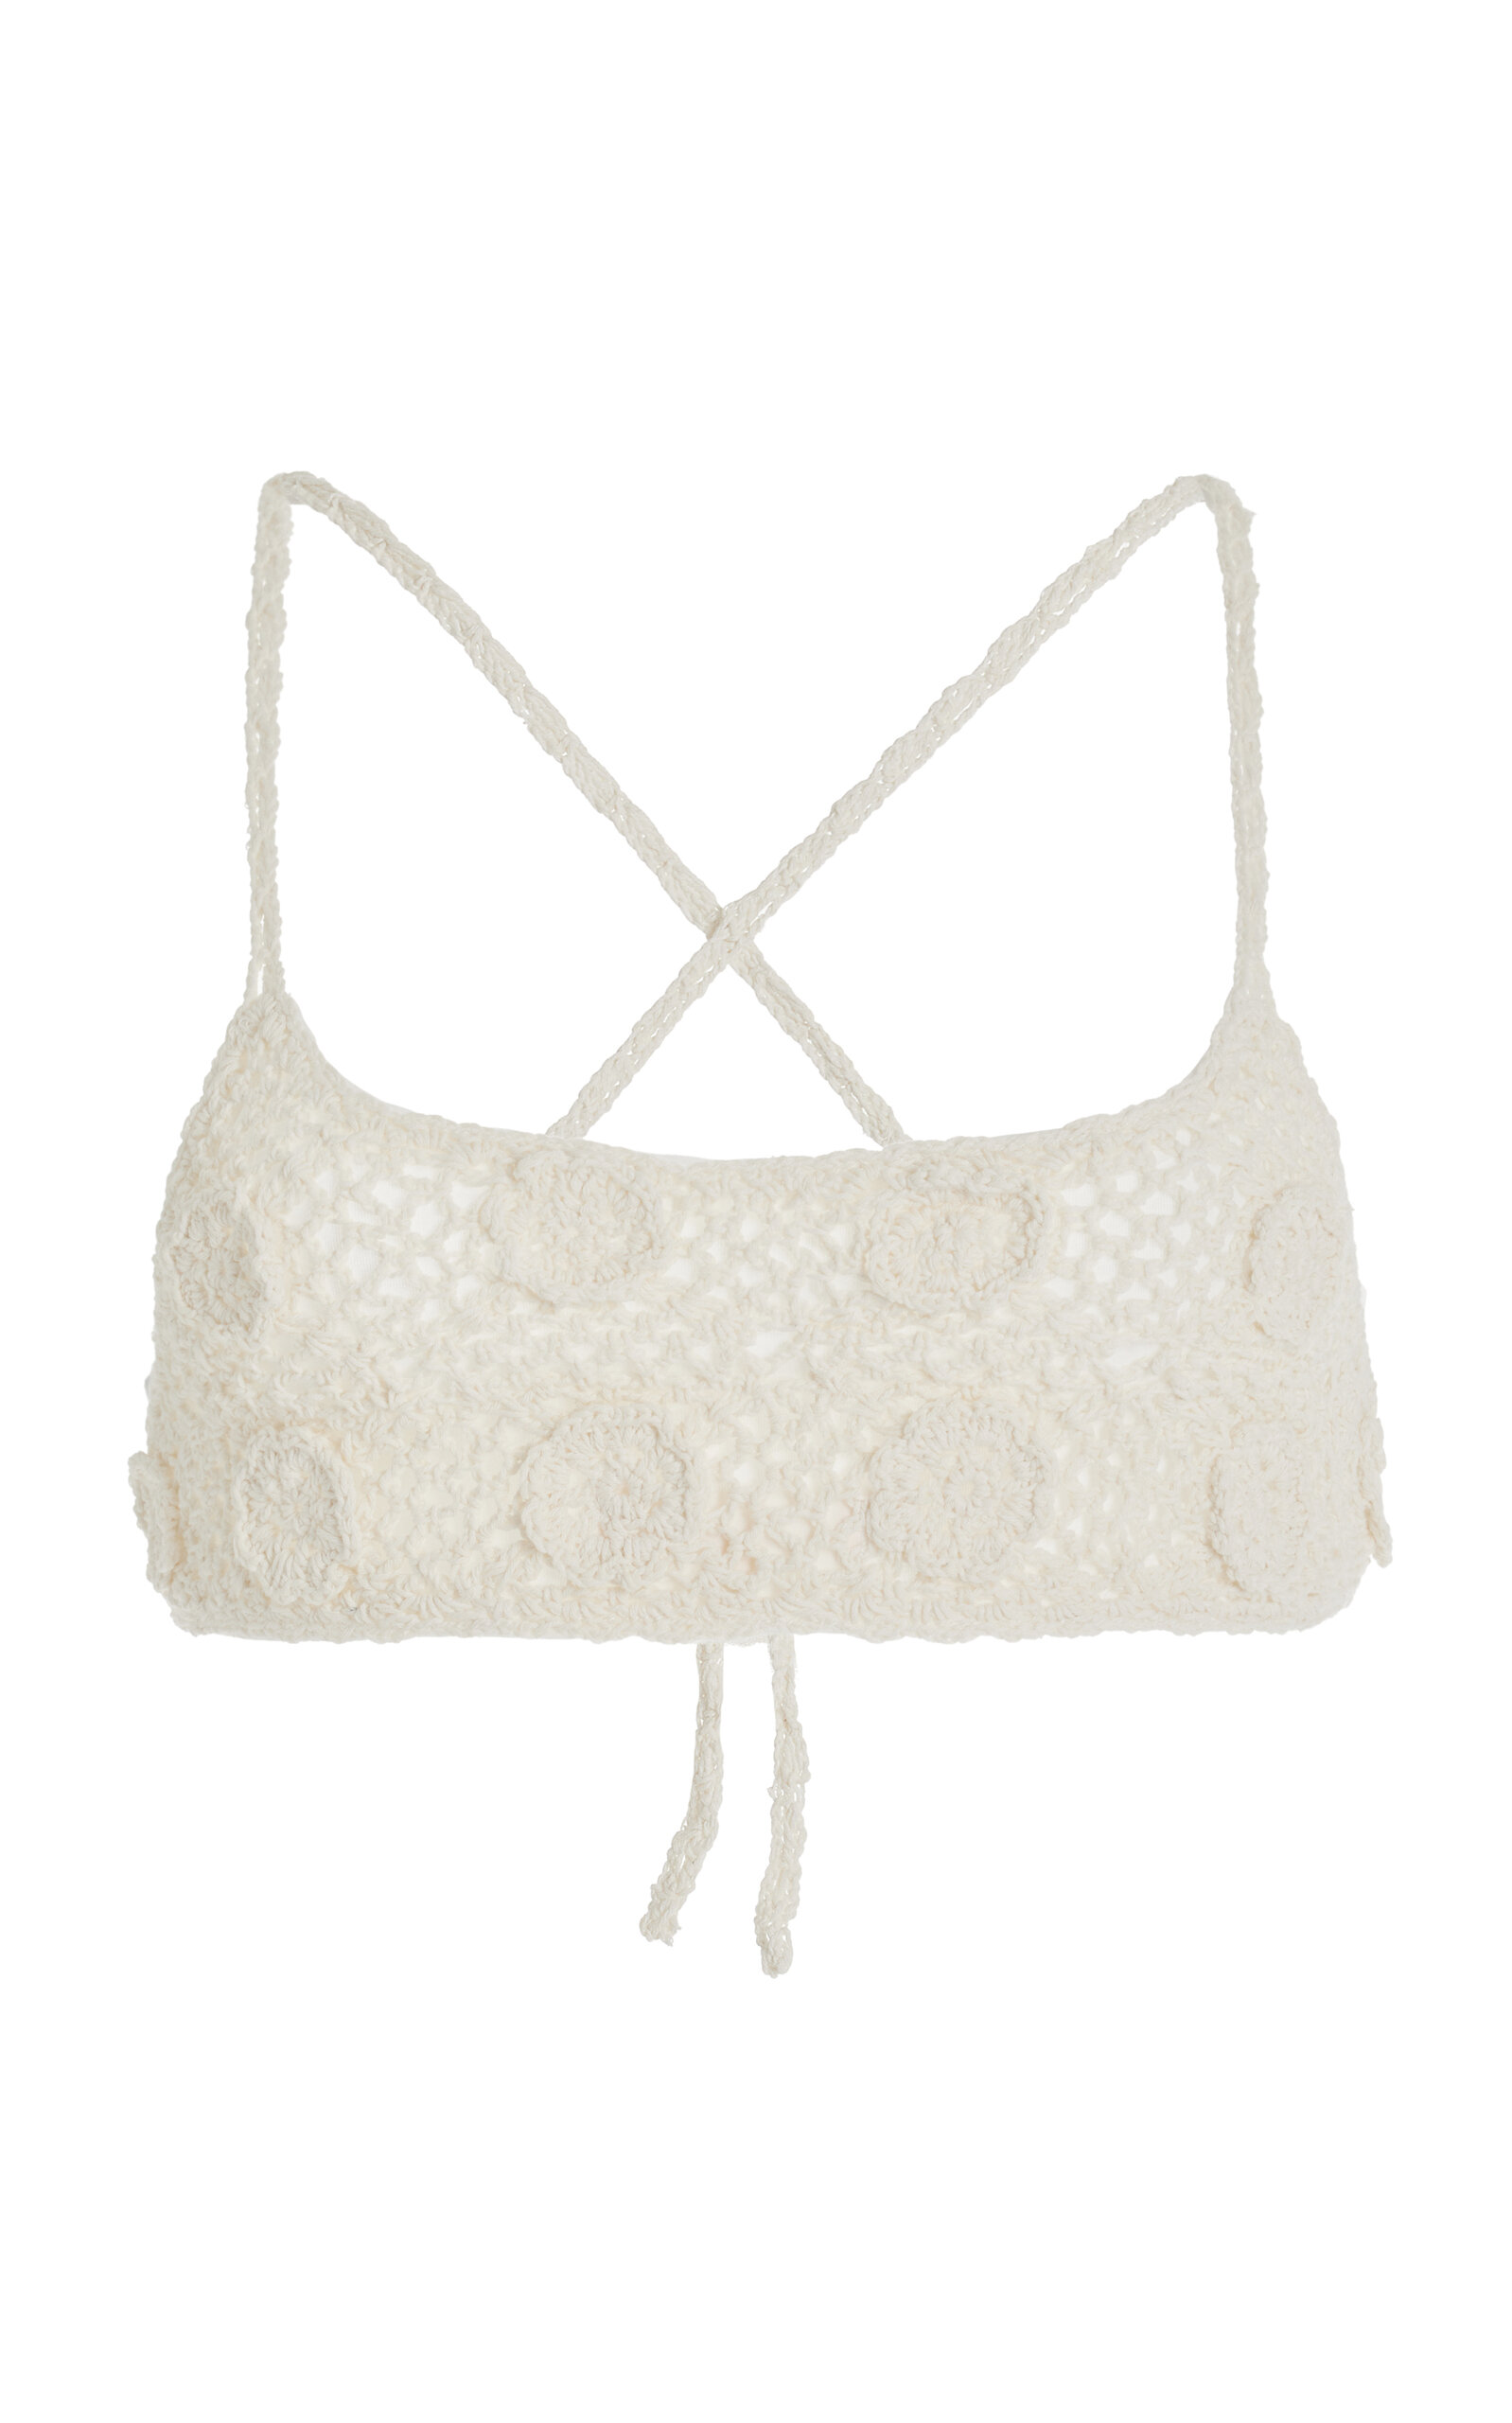 Cloe Cassandro Crocheted Cotton Bikini Top In White